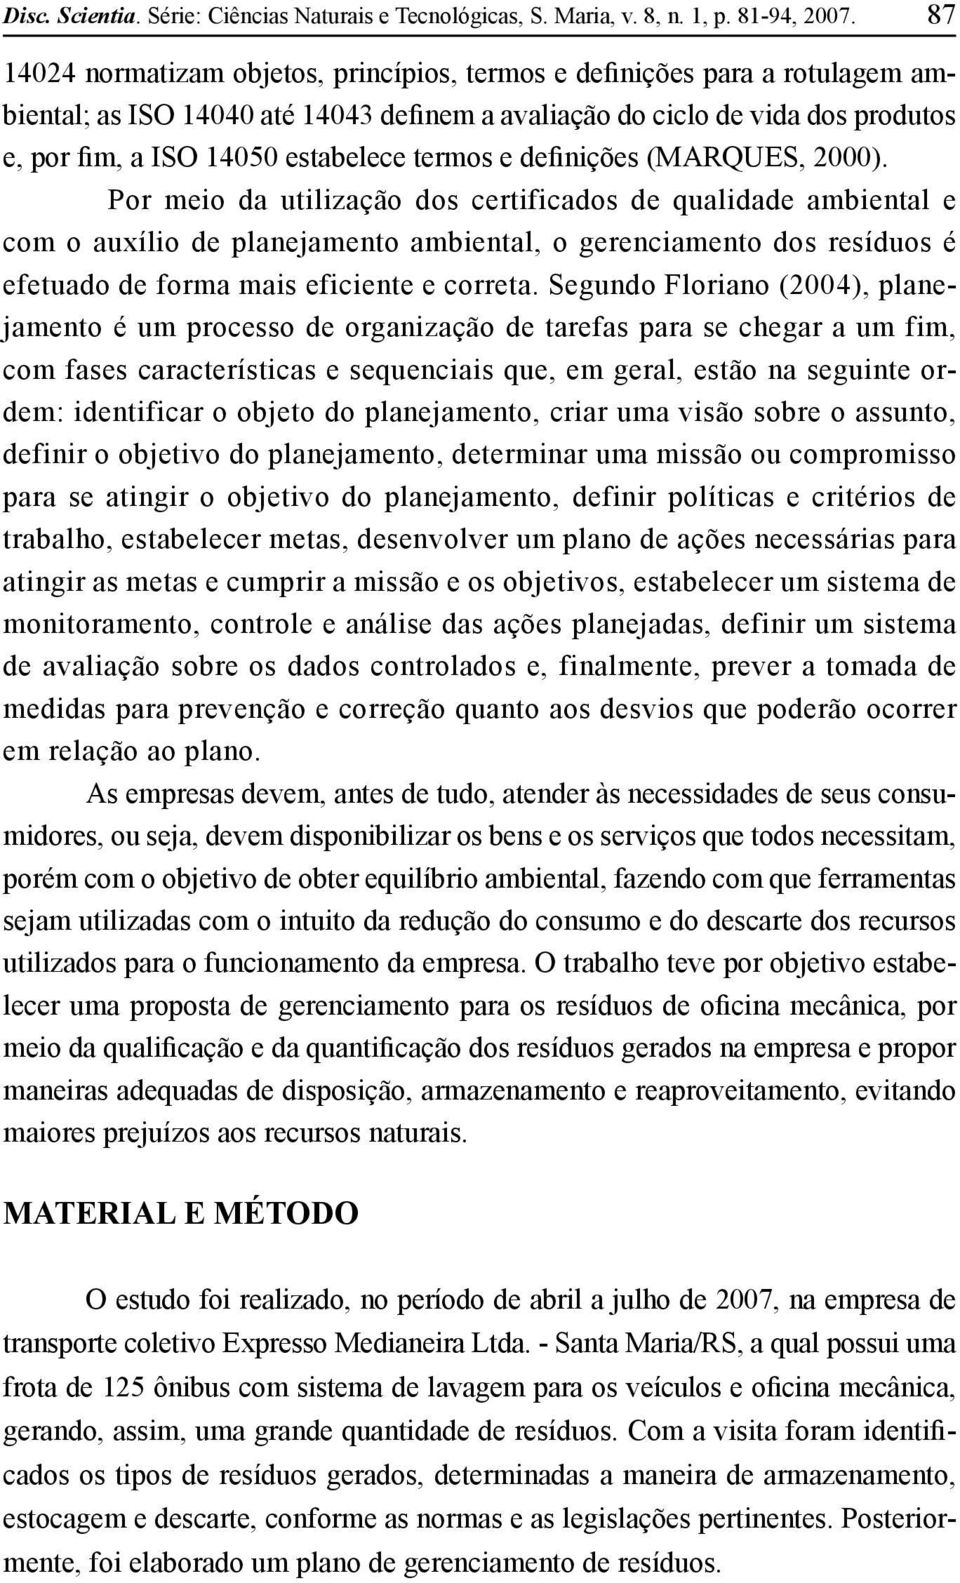 termos e definições (MARQUES, 2000).